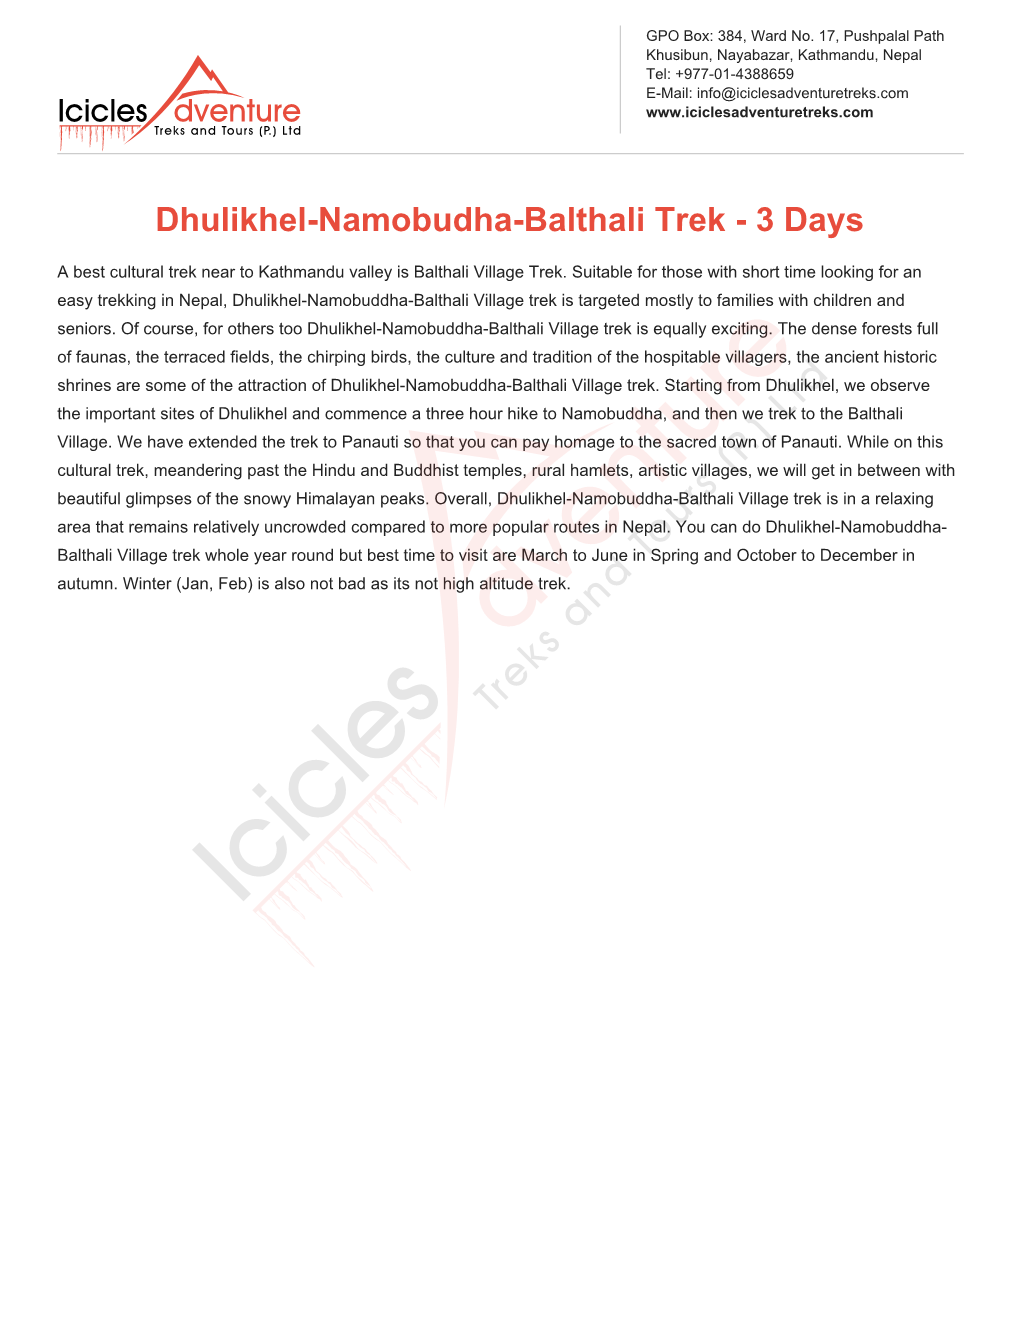 Dhulikhel-Namobudha-Balthali Trek - 3 Days